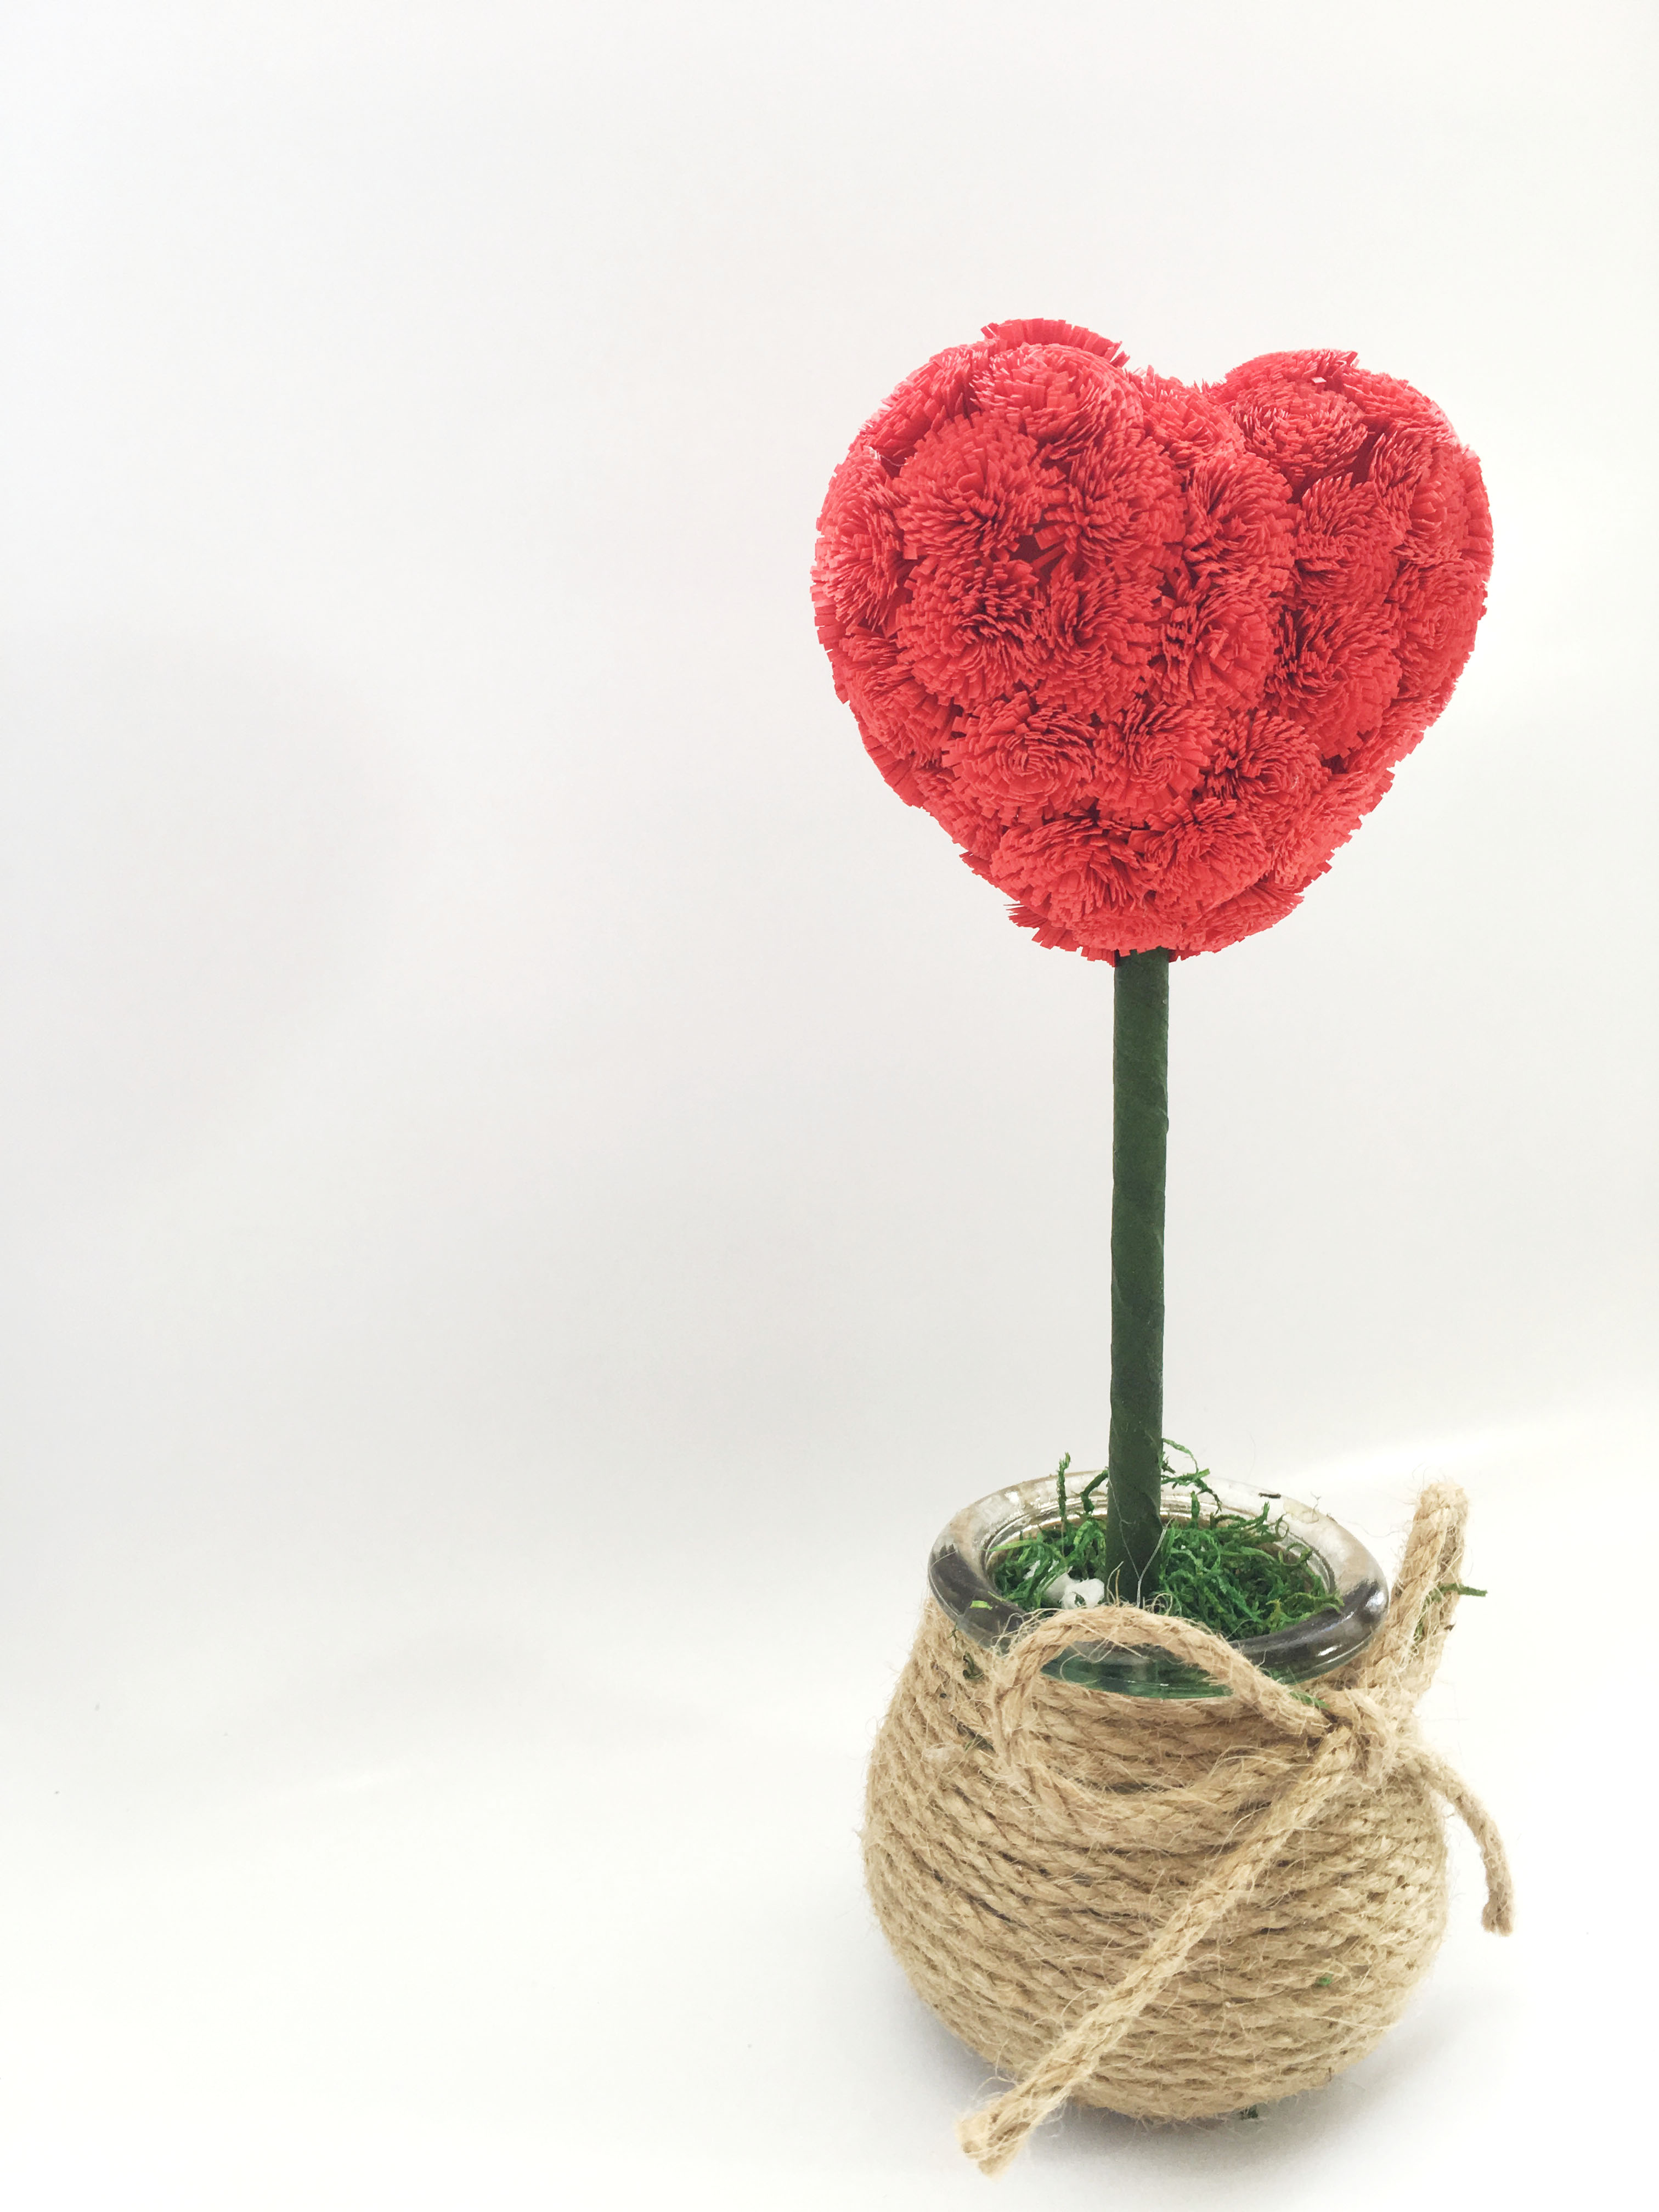 Chậu hoa trái tim bằng giấy mỹ thuật - Quà tặng trang trí (Đỏ 20cm)